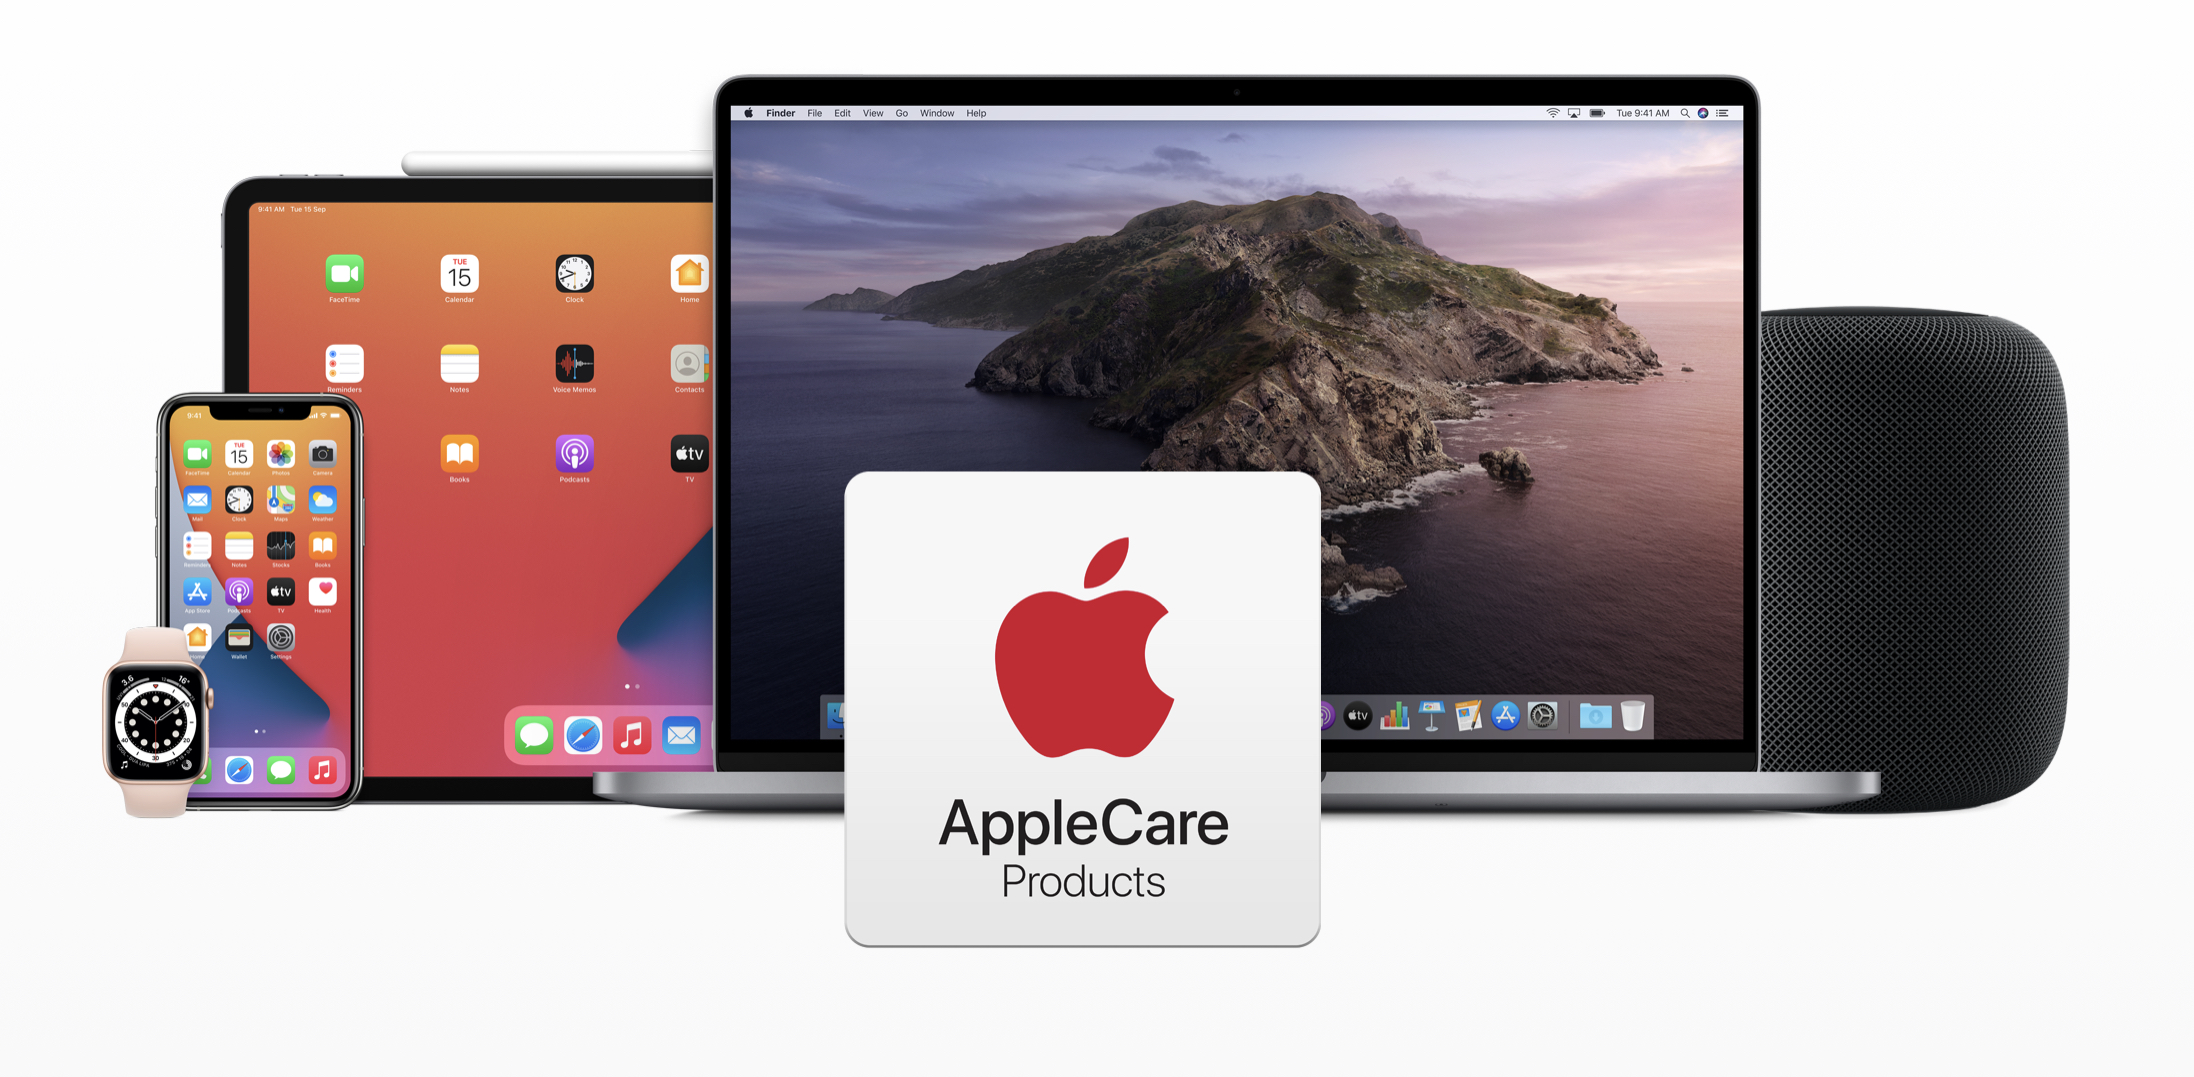 Apple Care 将可以无限续期 24个月后还能再买